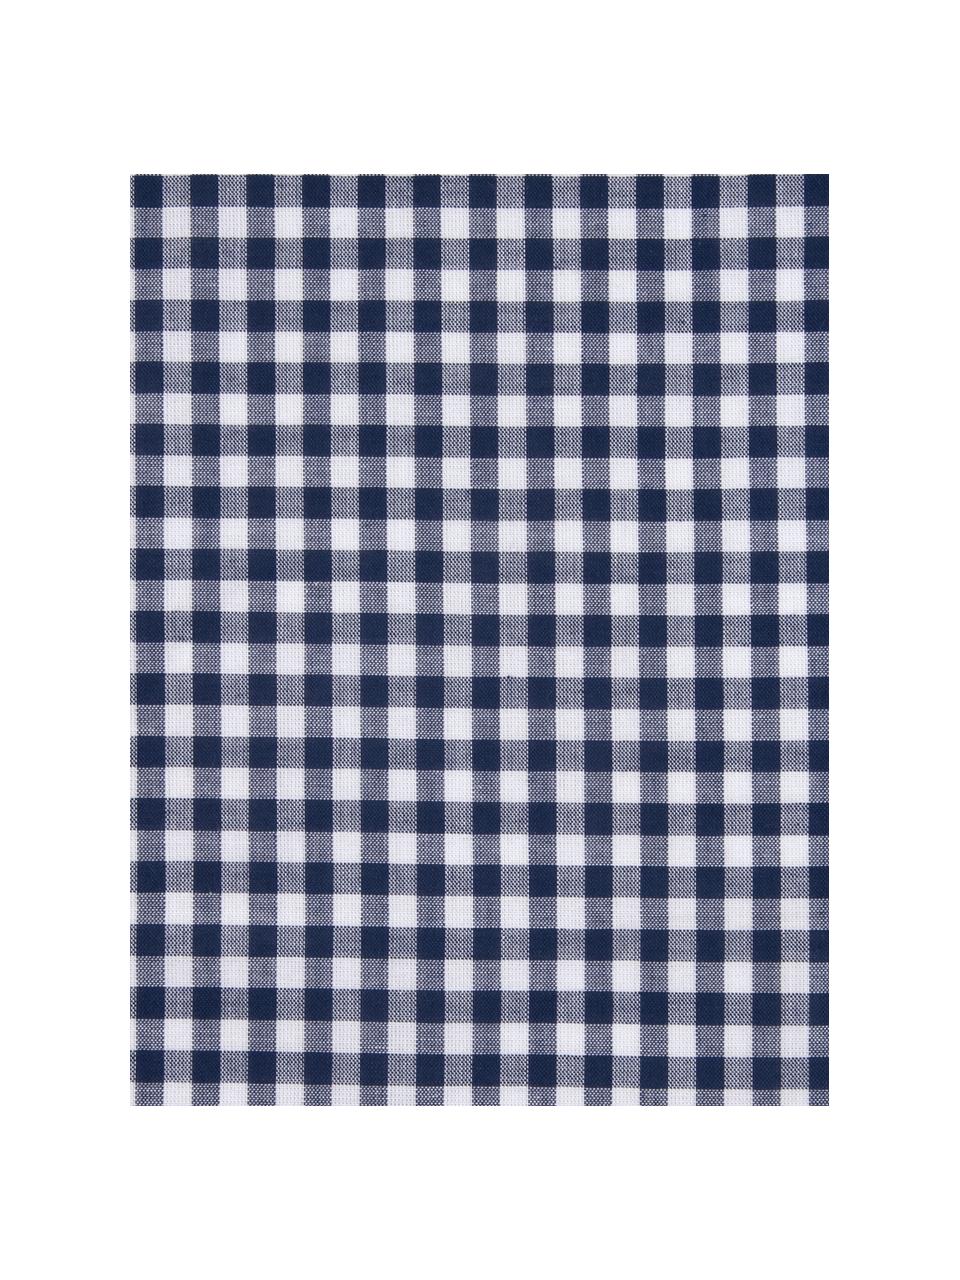 Károvaný bavlněný povlak na polštář Scotty, 2 ks, 100 % bavlna
Hustota tkaniny 118 TC, standardní gramáž
Bavlněné povlečení je měkké na dotek , dobře absorbuje vlhkost a je vhodné pro alergiky, Modrá/bílá, Š 40 cm, D 80 cm